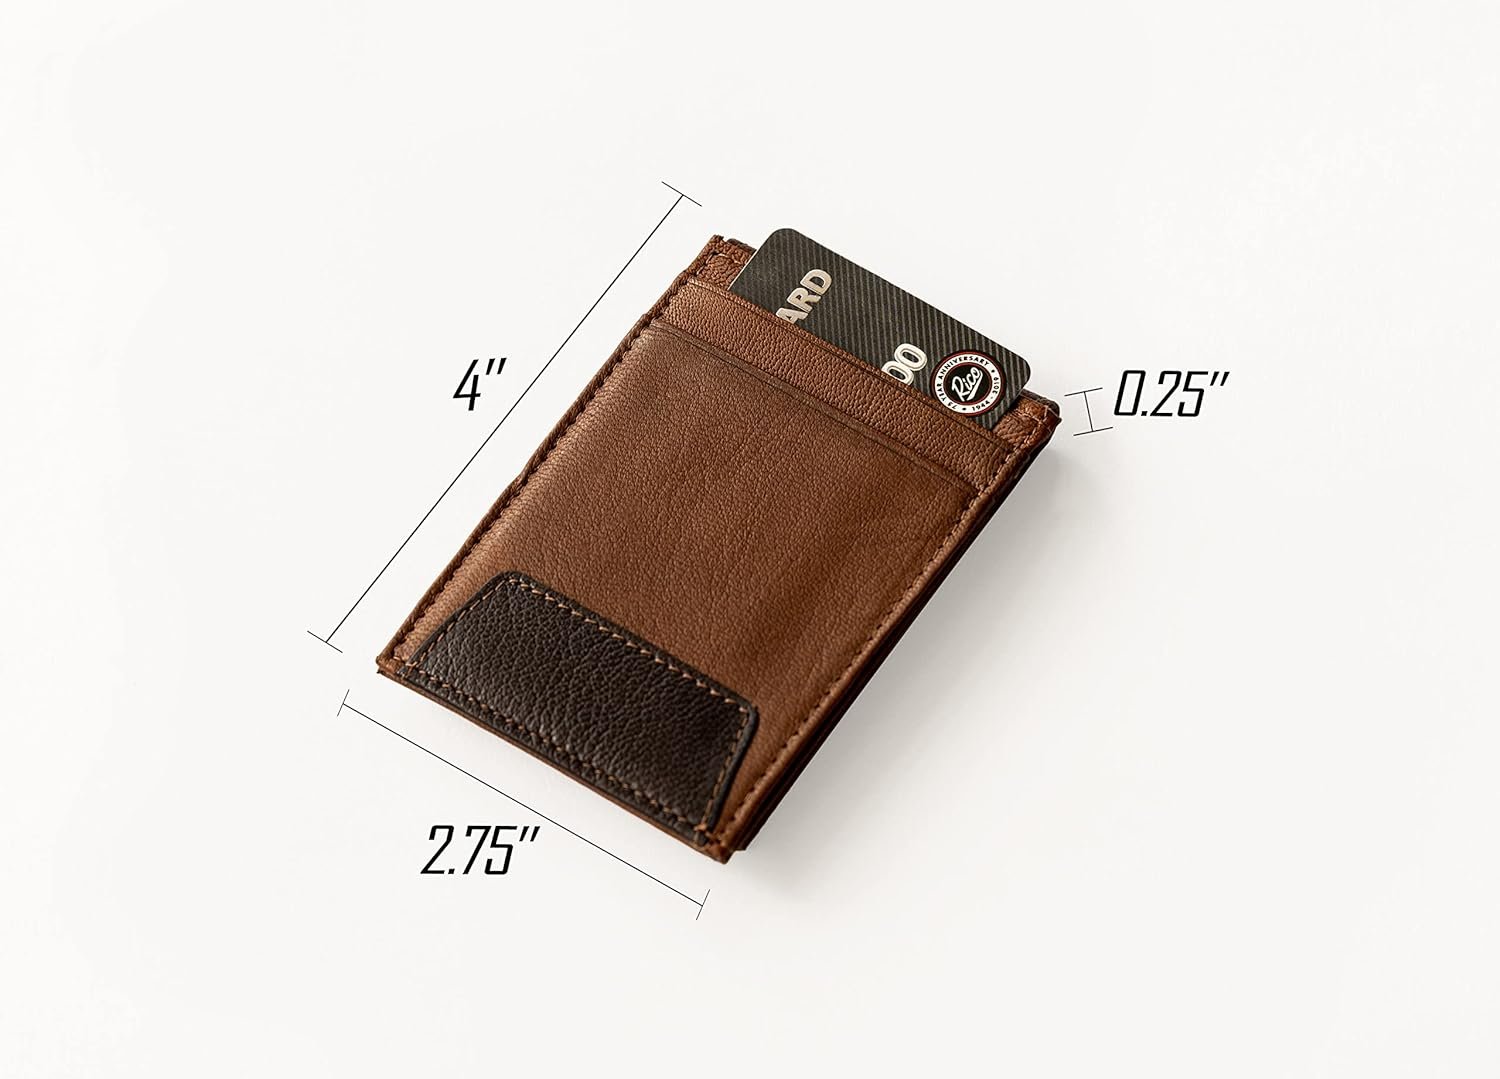 Atlanta Hawks Premium Brown Leather Wallet, Front Pocket Magnetic Money Clip, Laser Engraved, Vegan